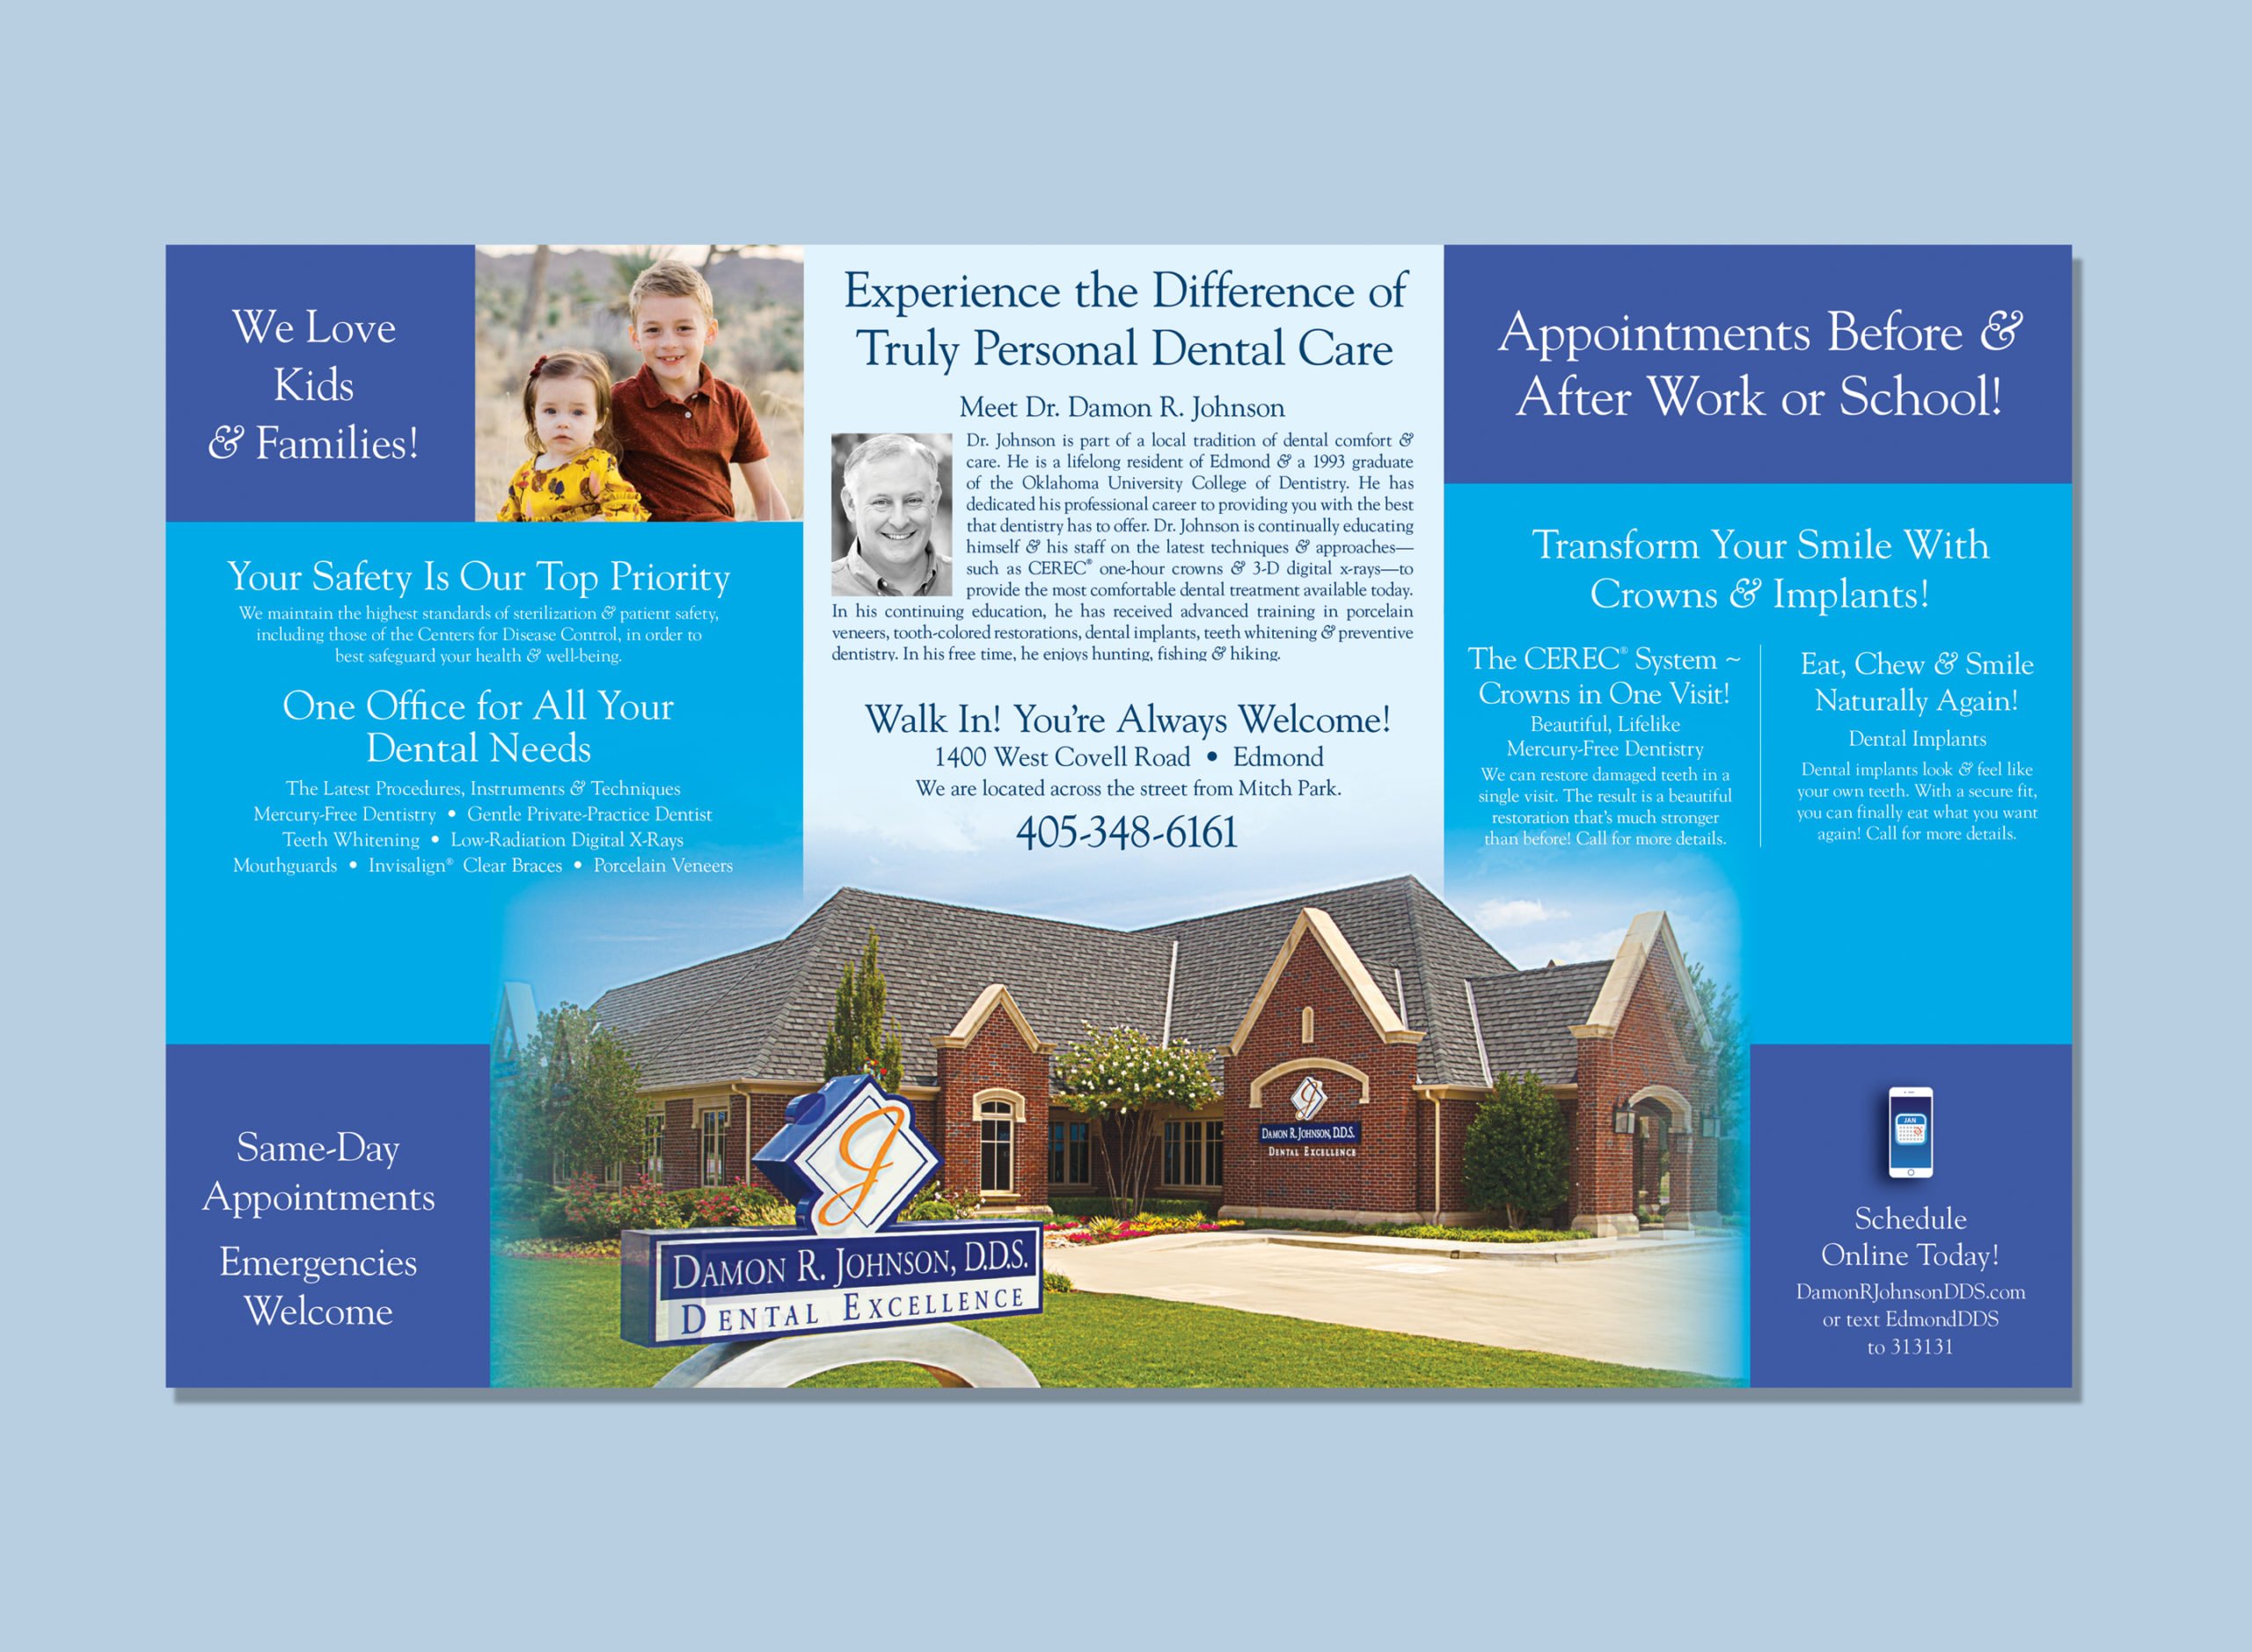 Damon R. Johnson DDS Dental Excellence Brochure